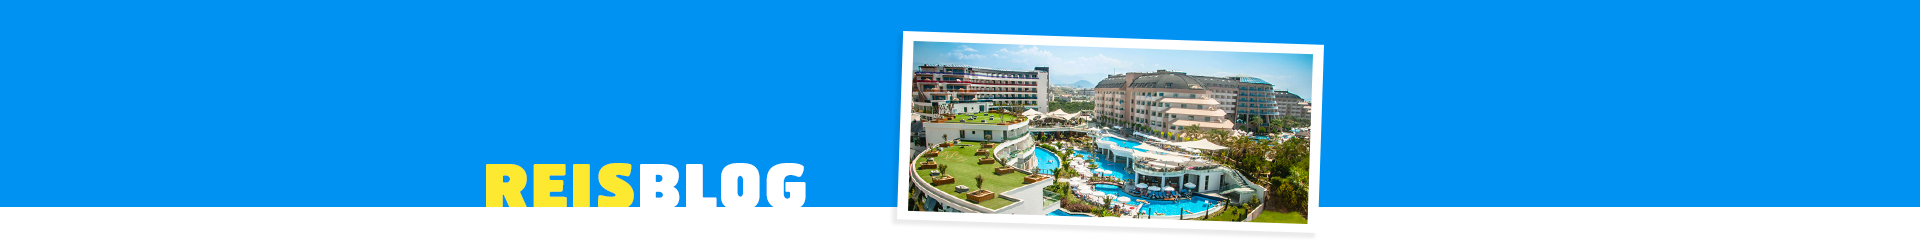 All inclusive hotel in Turkije